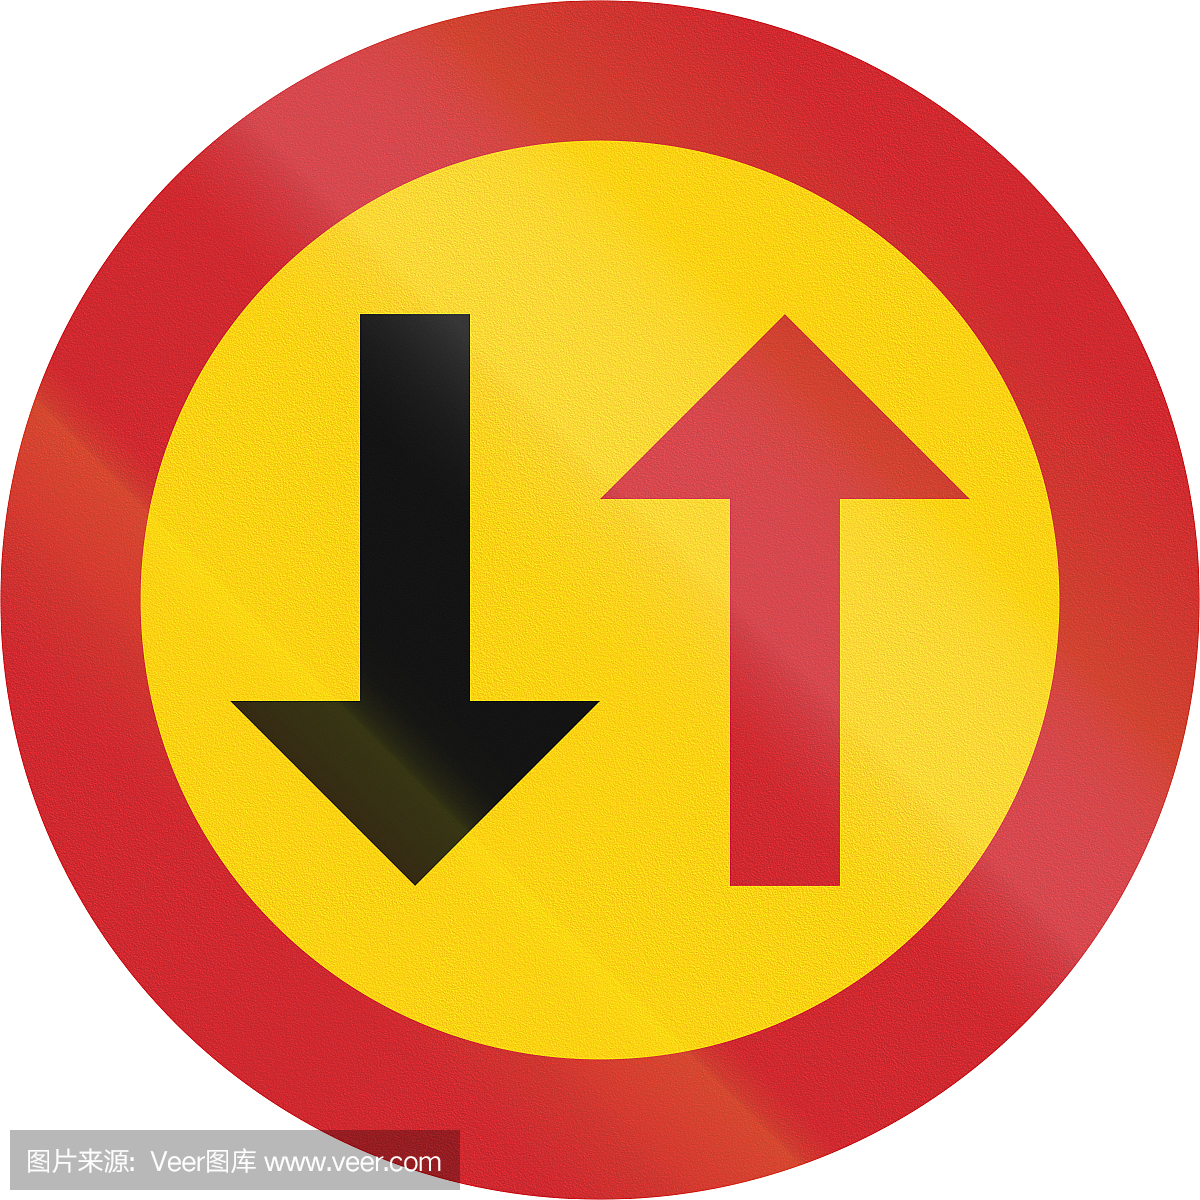 瑞典使用的道路标志 - 迎面而来的车辆优先